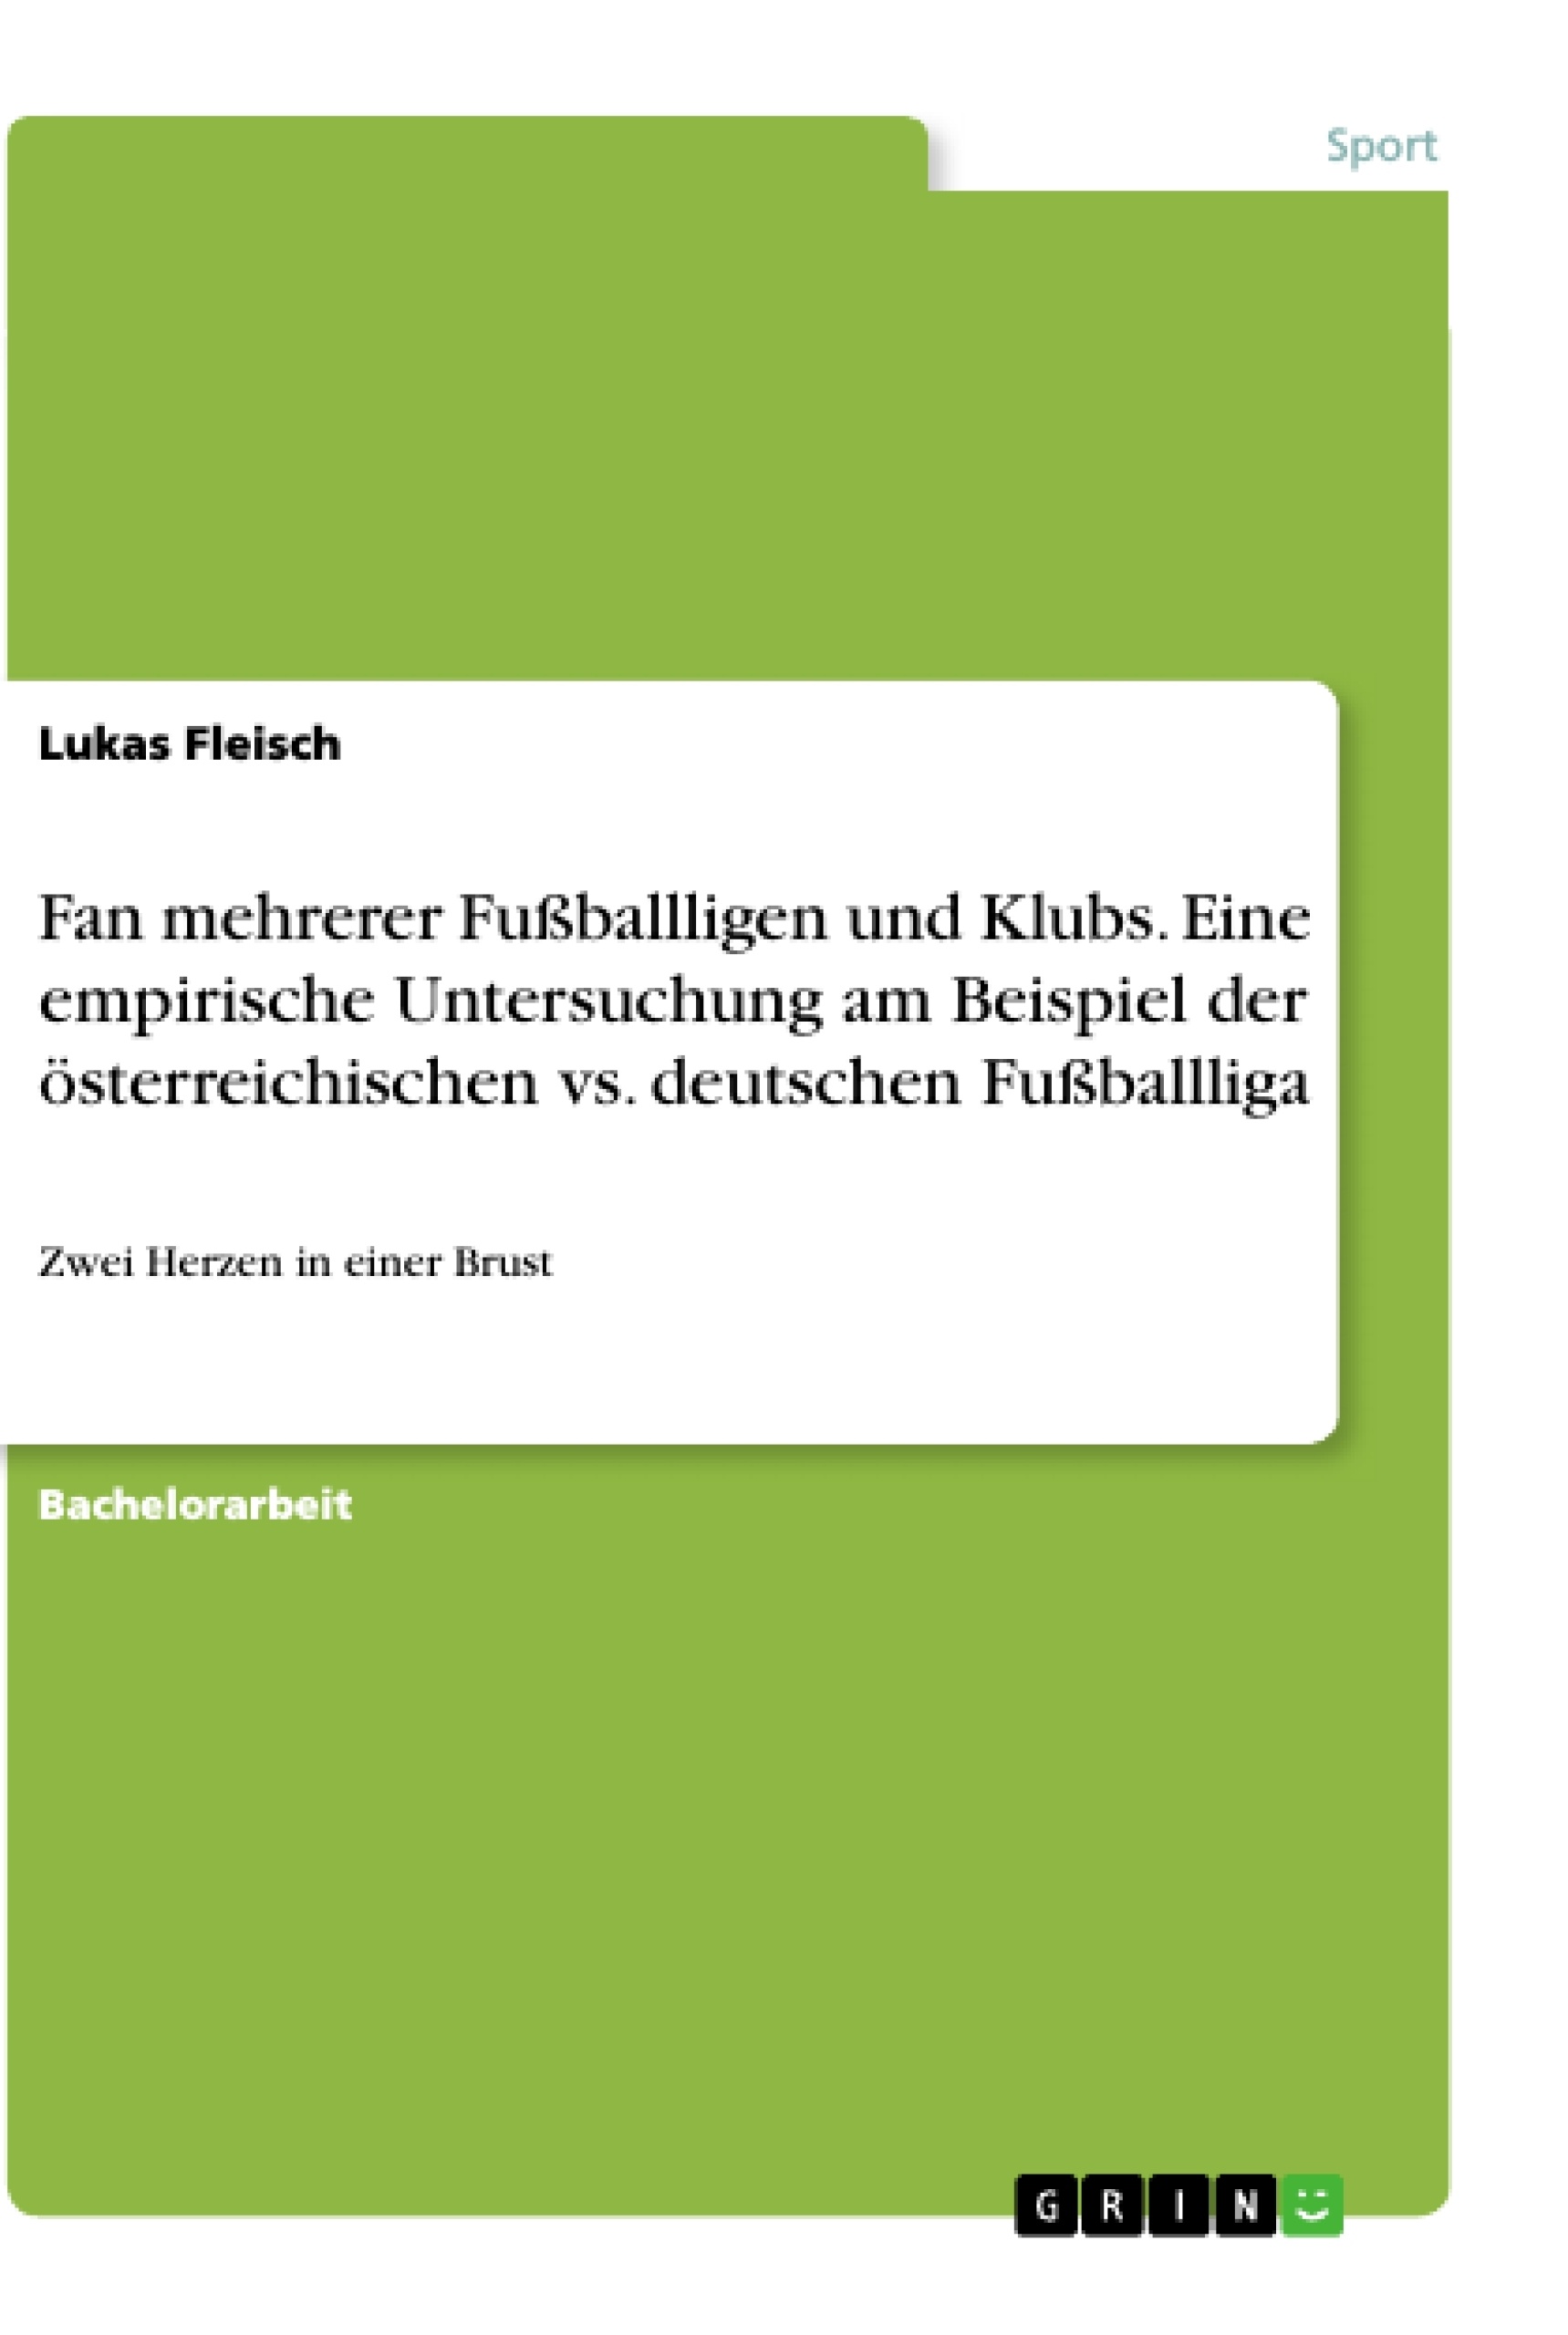 Título: Fan mehrerer Fußballligen und Klubs. Eine empirische Untersuchung am Beispiel der österreichischen vs. deutschen Fußballliga